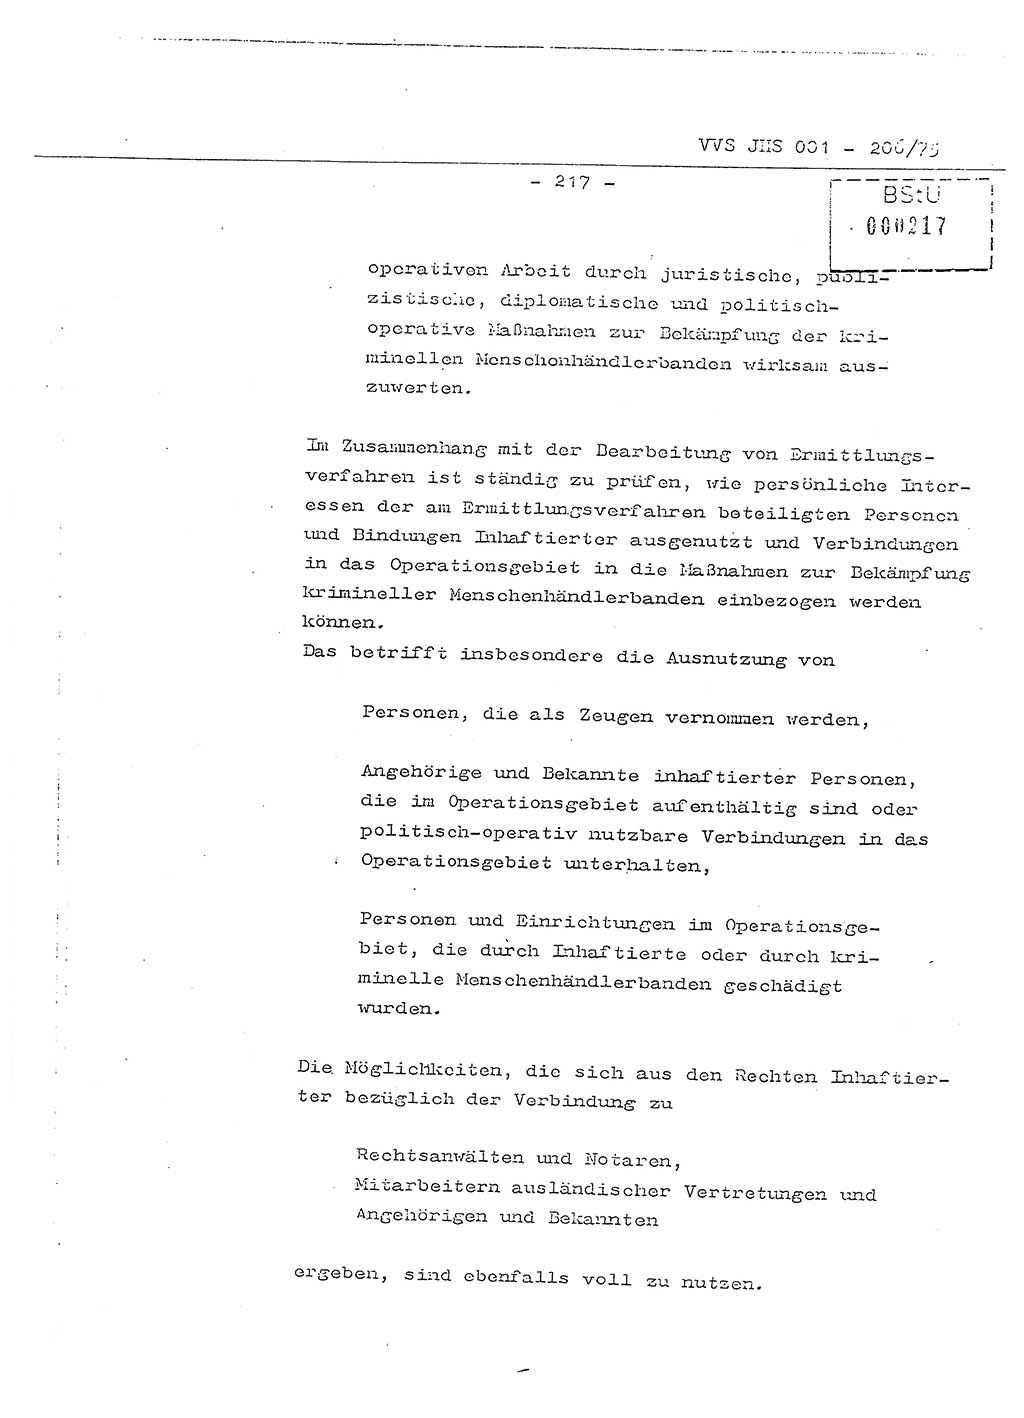 Dissertation Generalmajor Manfred Hummitzsch (Leiter der BV Leipzig), Generalmajor Heinz Fiedler (HA Ⅵ), Oberst Rolf Fister (HA Ⅸ), Ministerium für Staatssicherheit (MfS) [Deutsche Demokratische Republik (DDR)], Juristische Hochschule (JHS), Vertrauliche Verschlußsache (VVS) 001-206/75, Potsdam 1975, Seite 217 (Diss. MfS DDR JHS VVS 001-206/75 1975, S. 217)